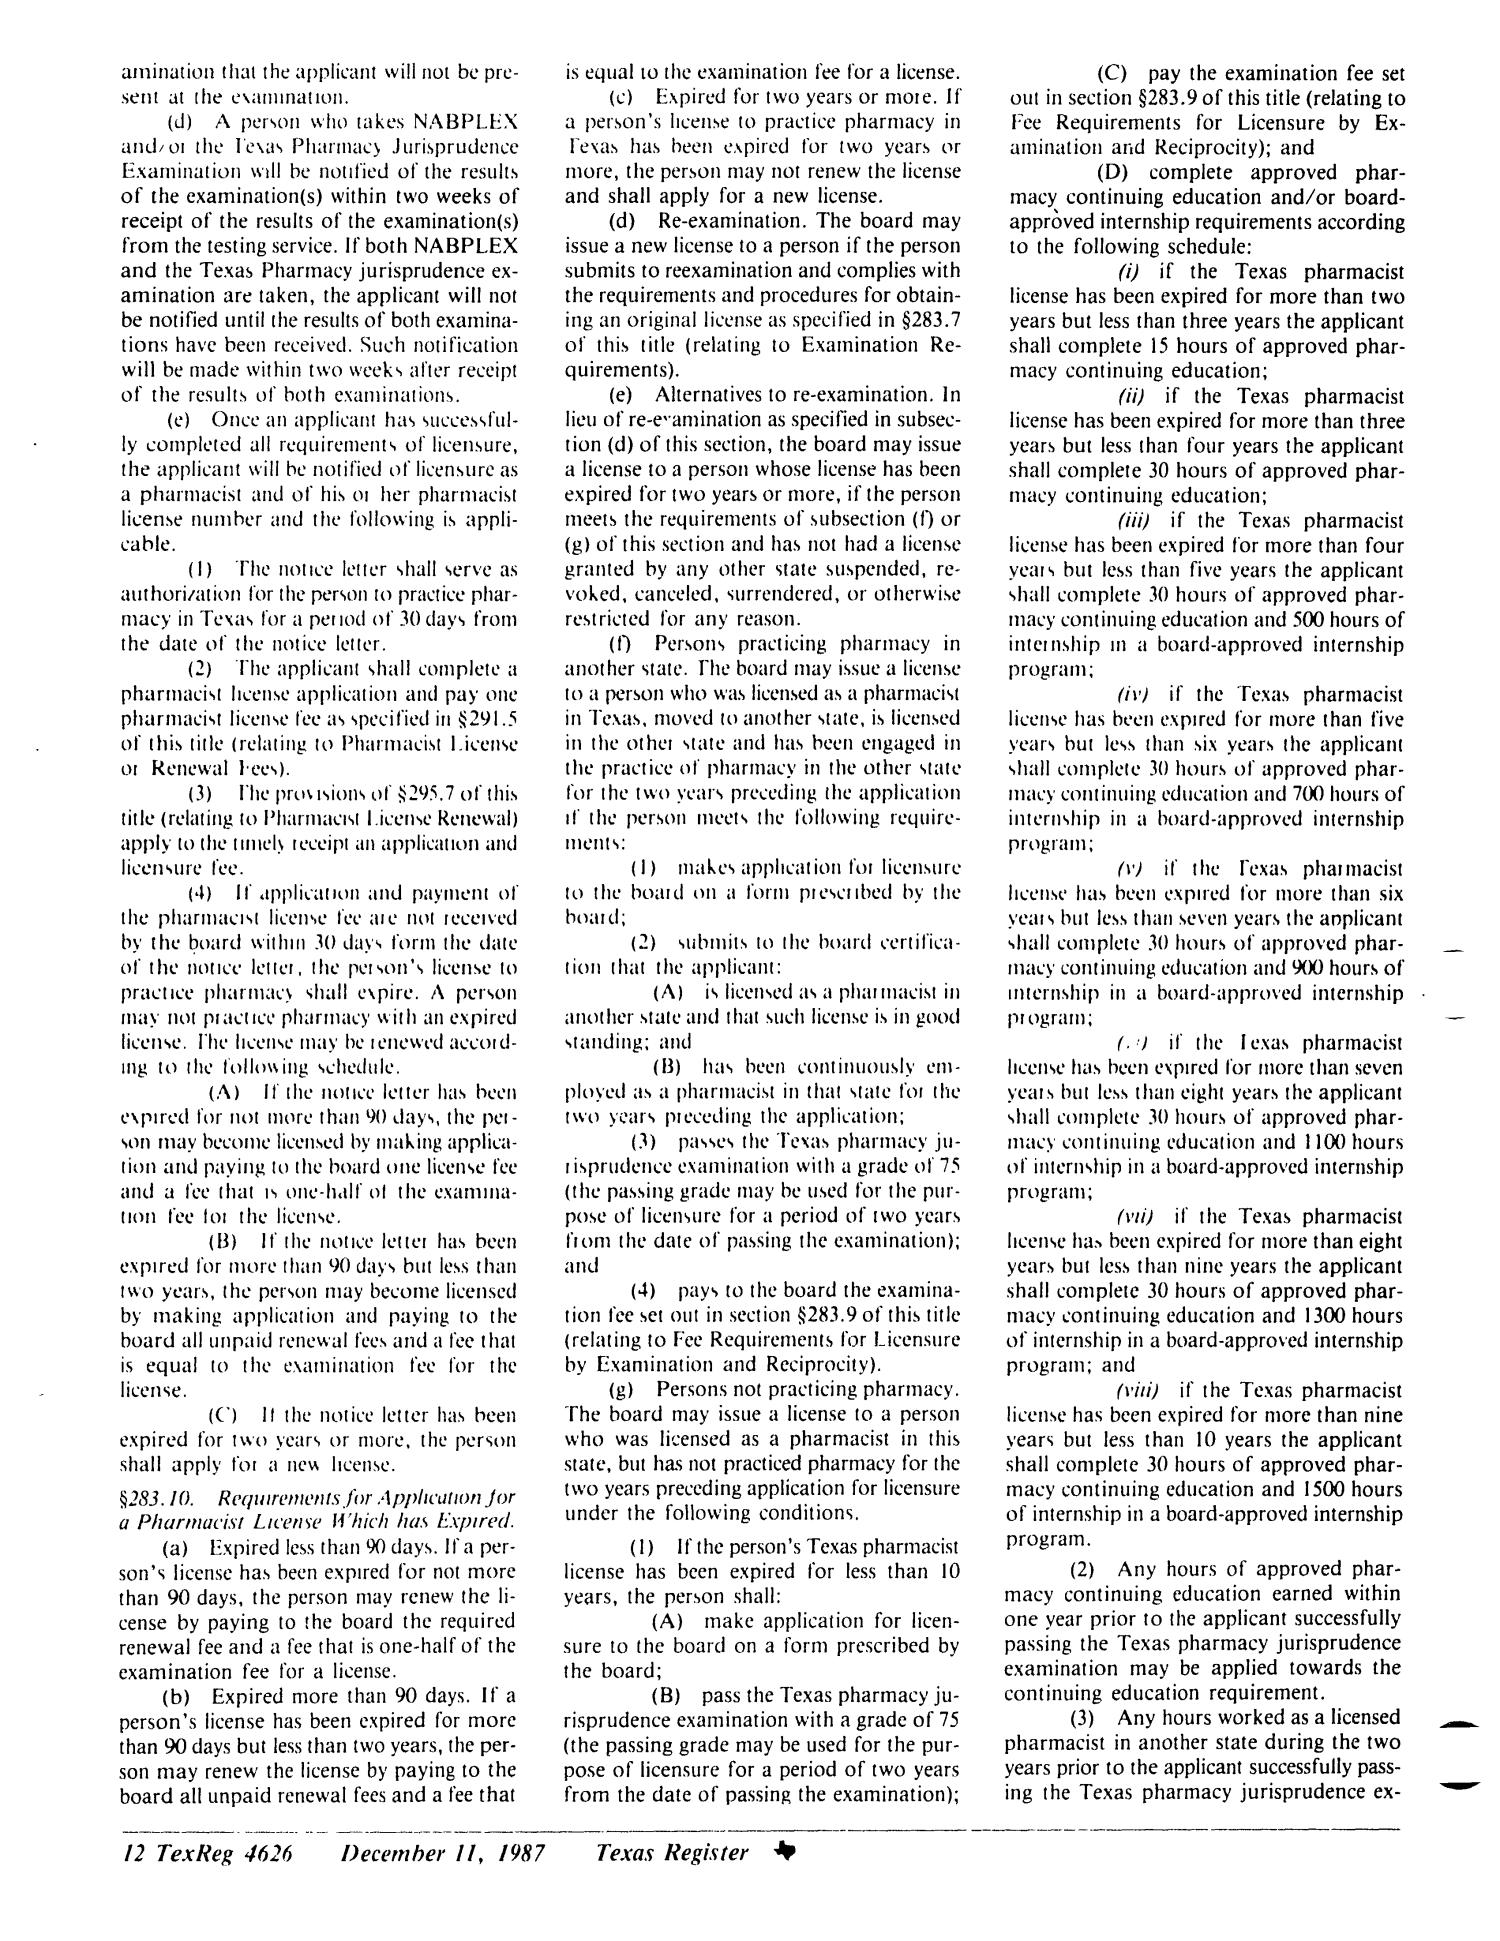 Texas Register, Volume 12, Number 92, Pages 4605-4656, December 11, 1987
                                                
                                                    4626
                                                